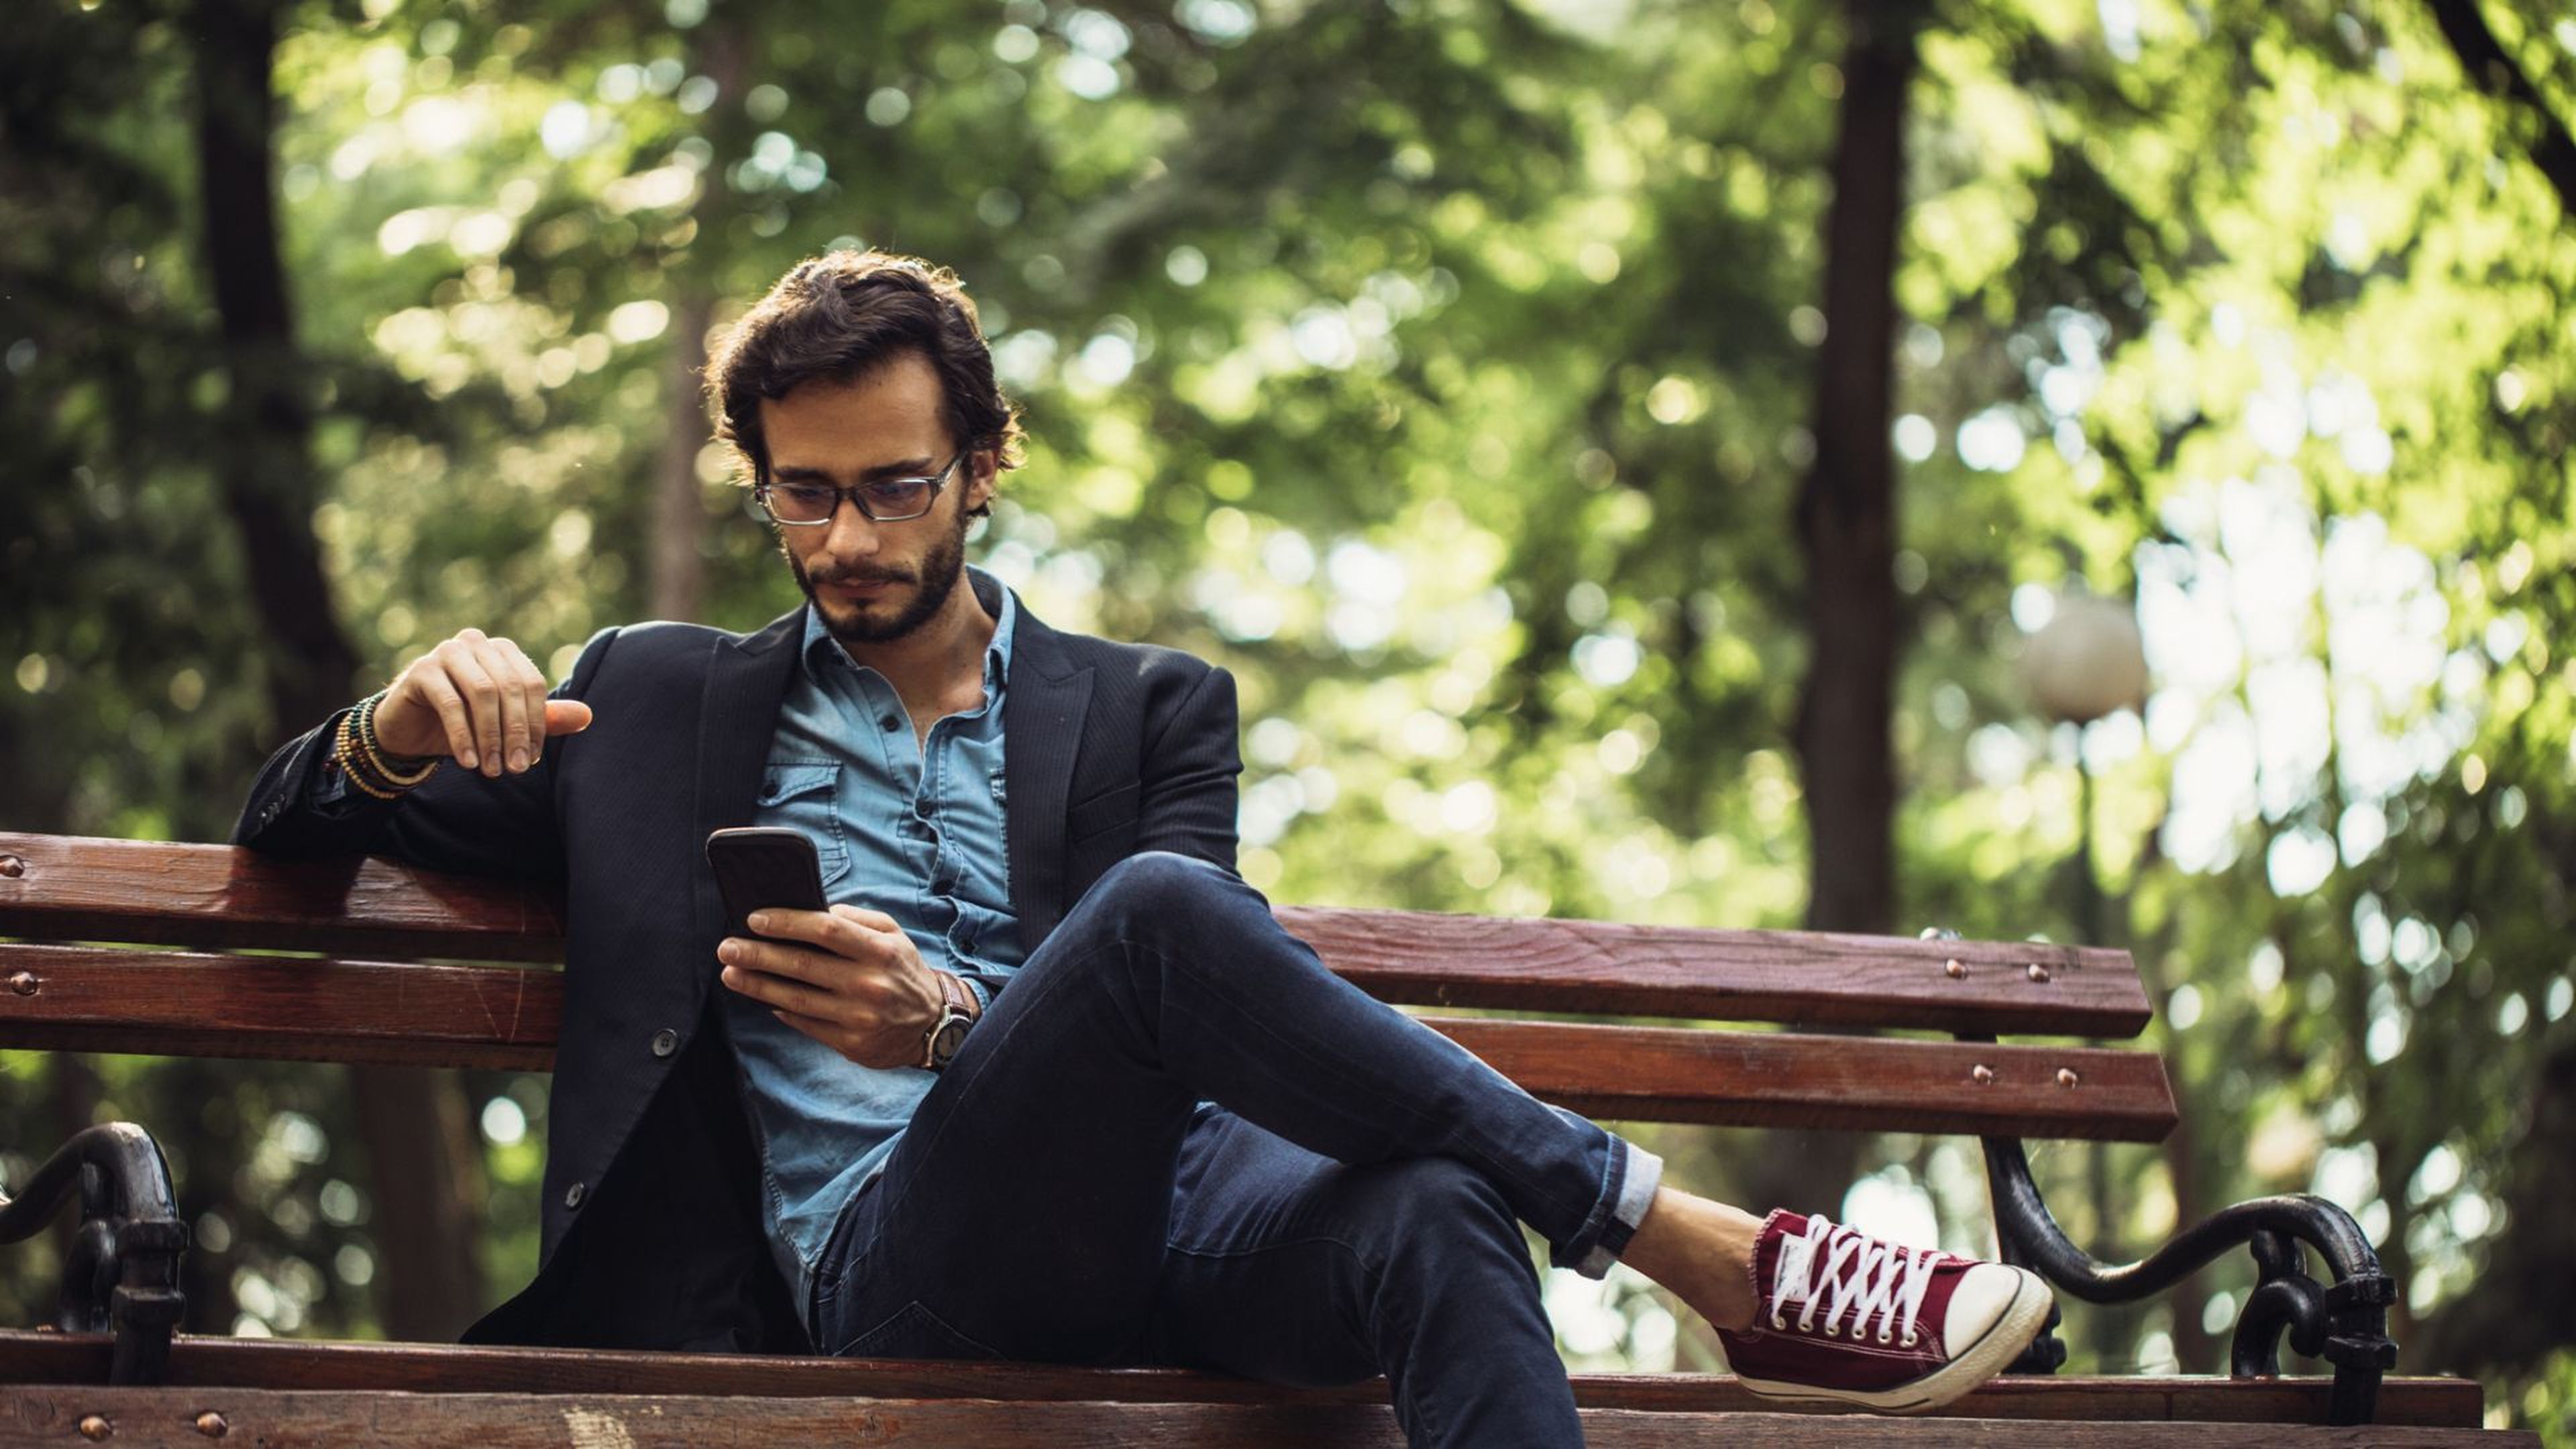 Un hombre consulta el móvil sentado en un banco del parque.